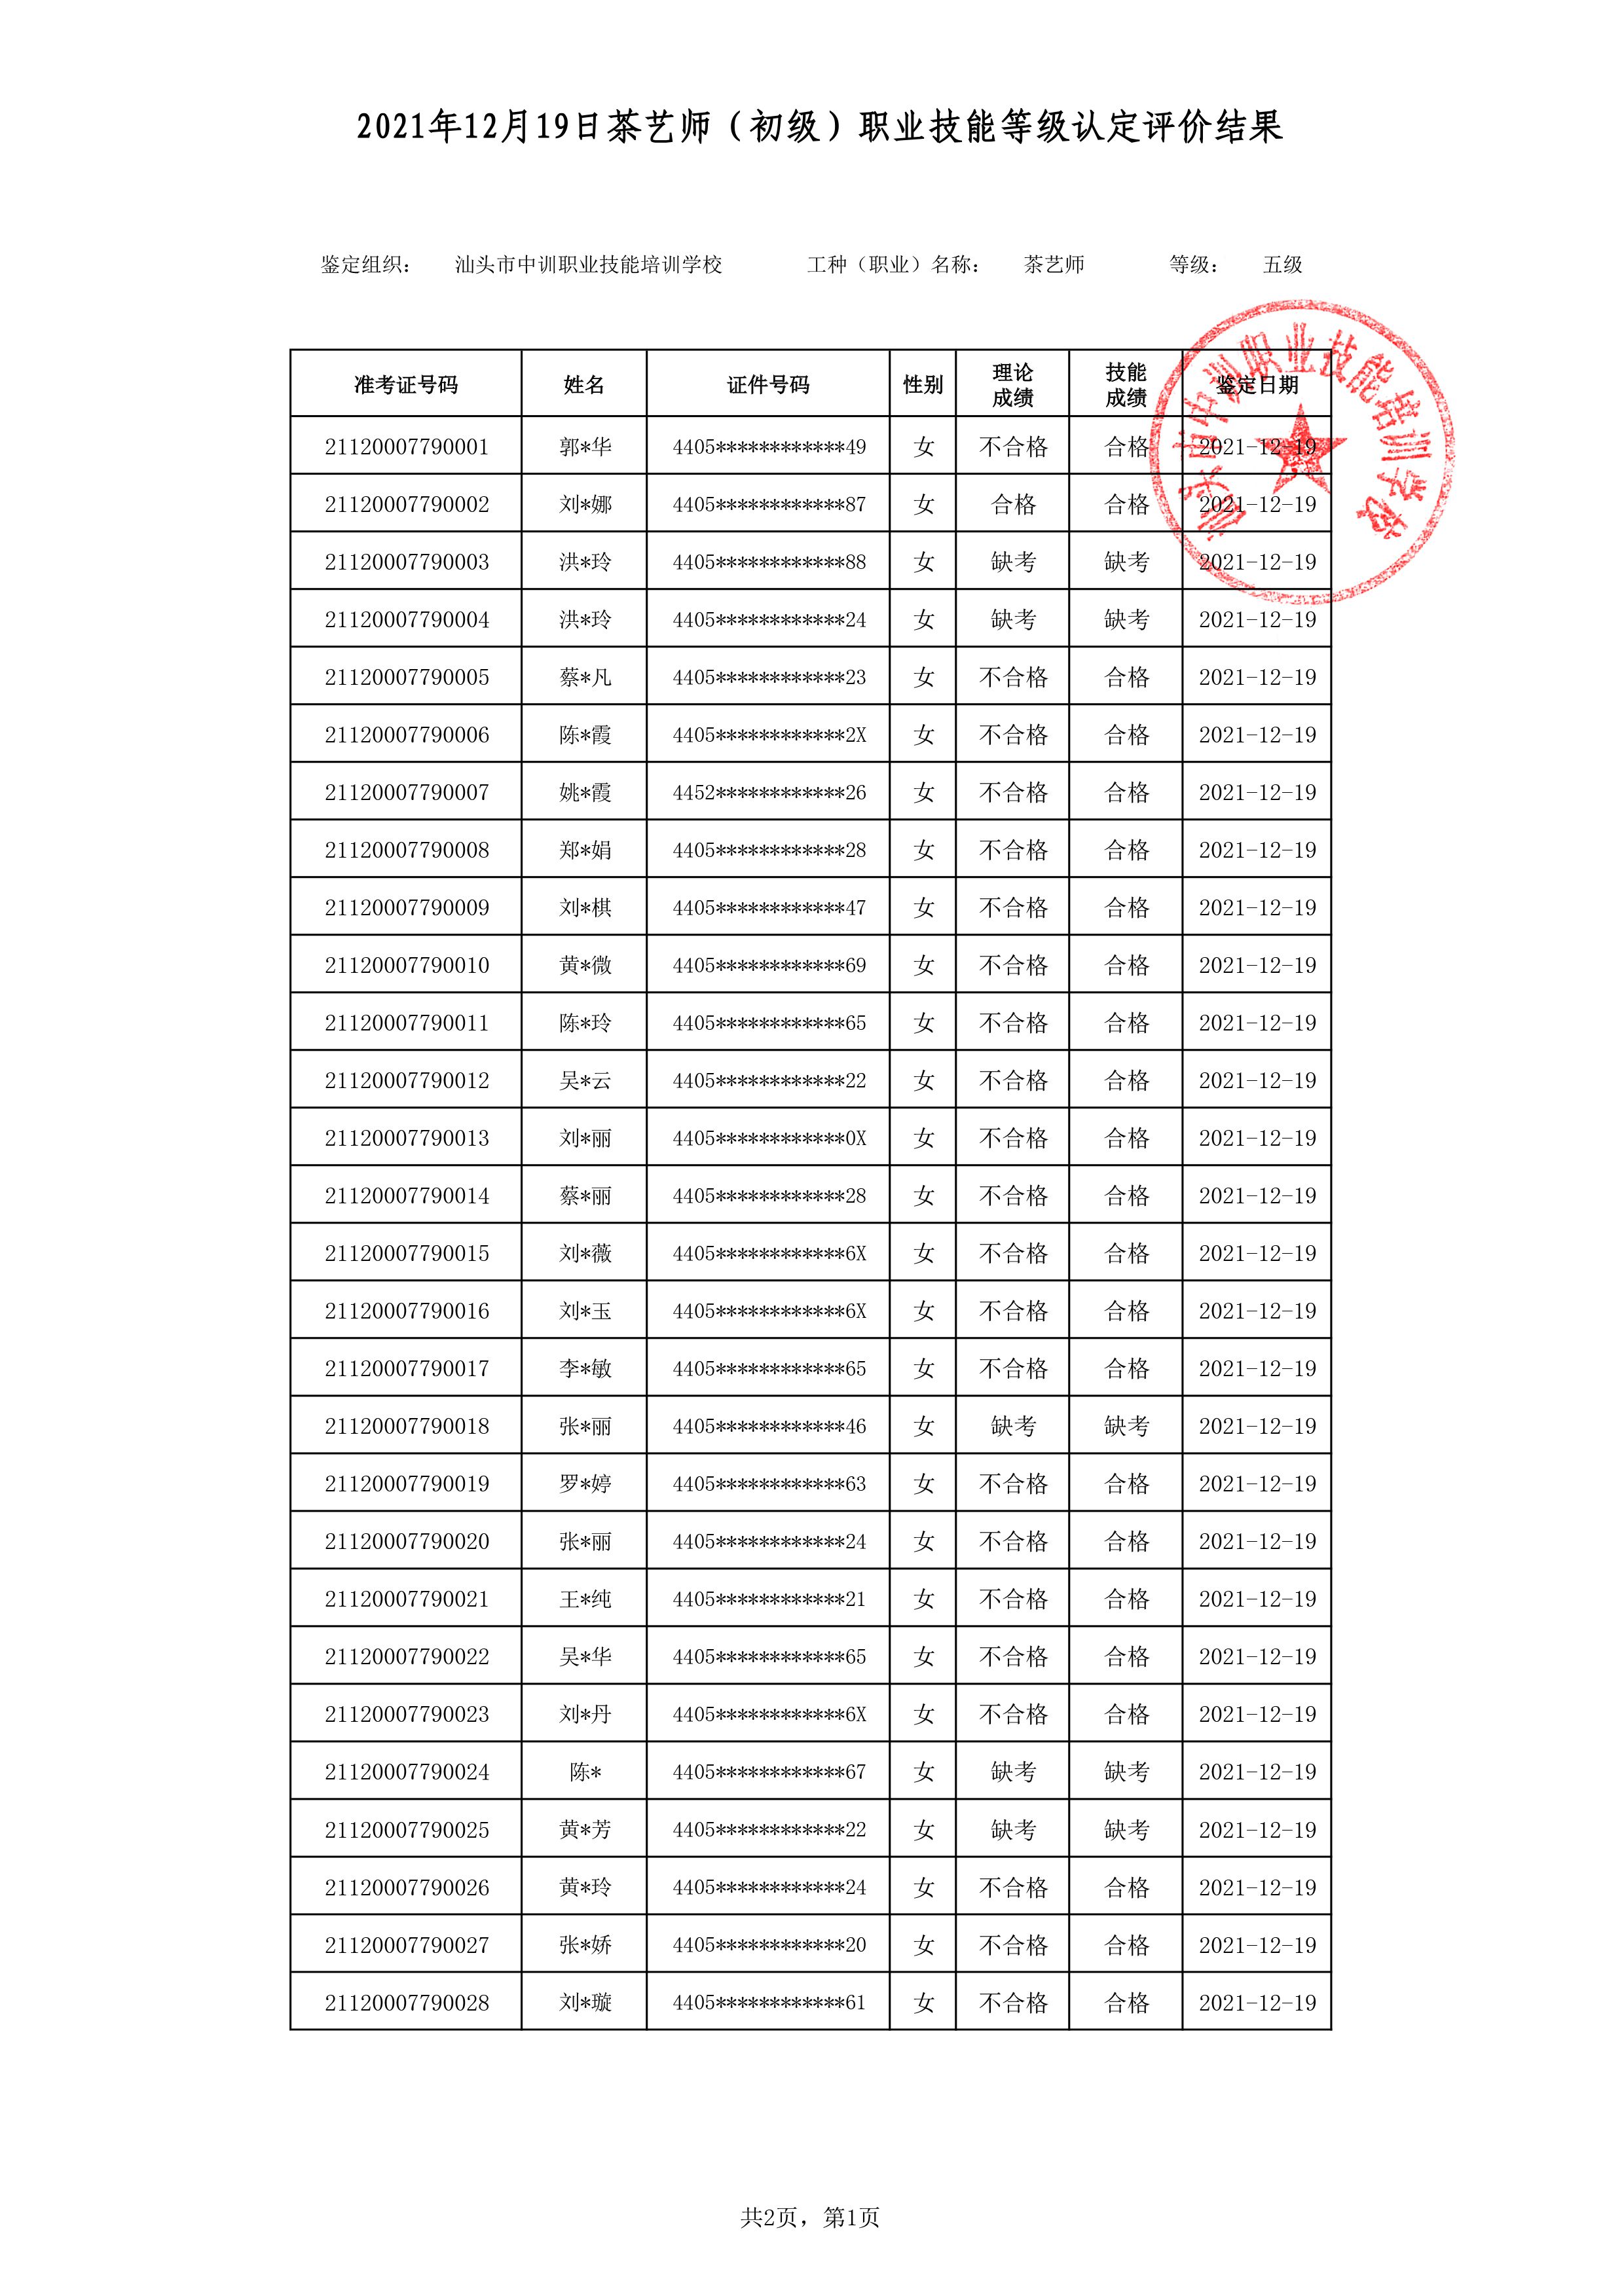 21-12-19五级茶艺师考试鉴定名册表-1 副本.jpg